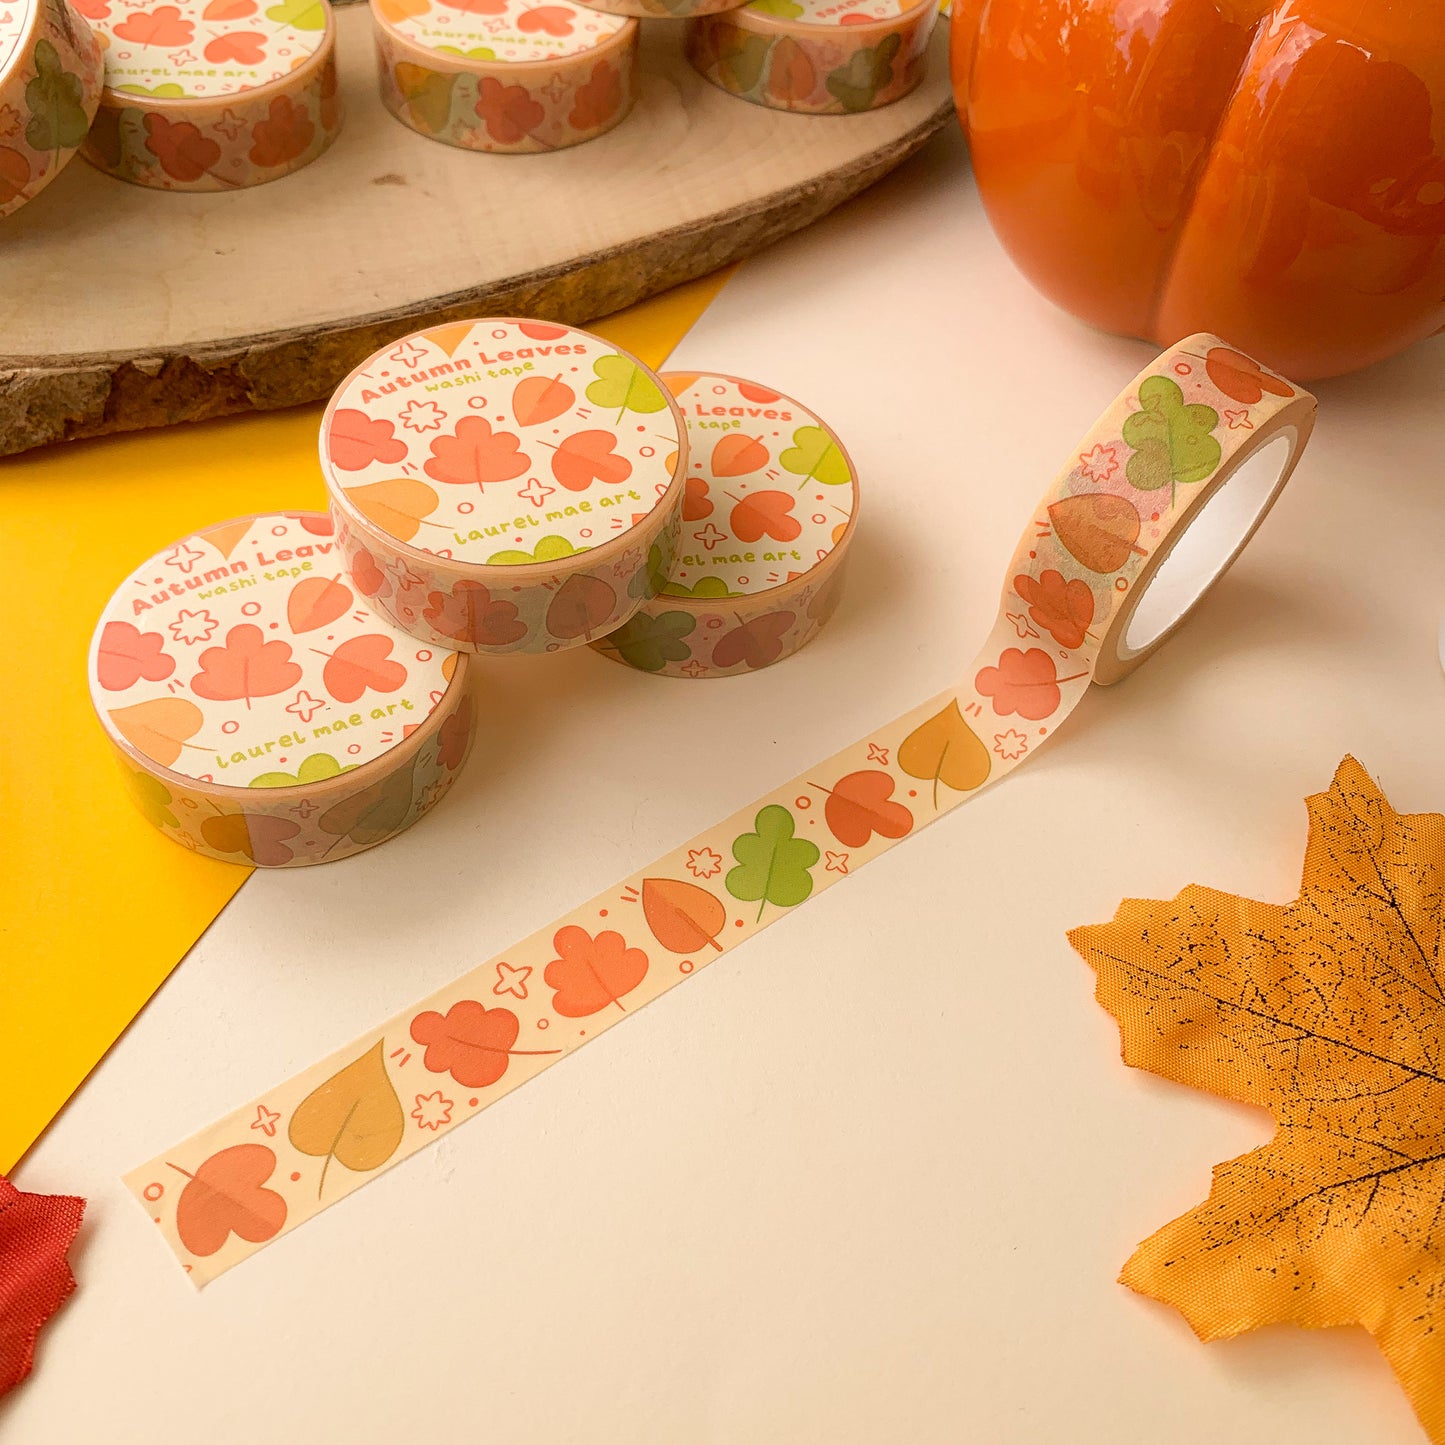 Autumn Leaves - Washi Tape